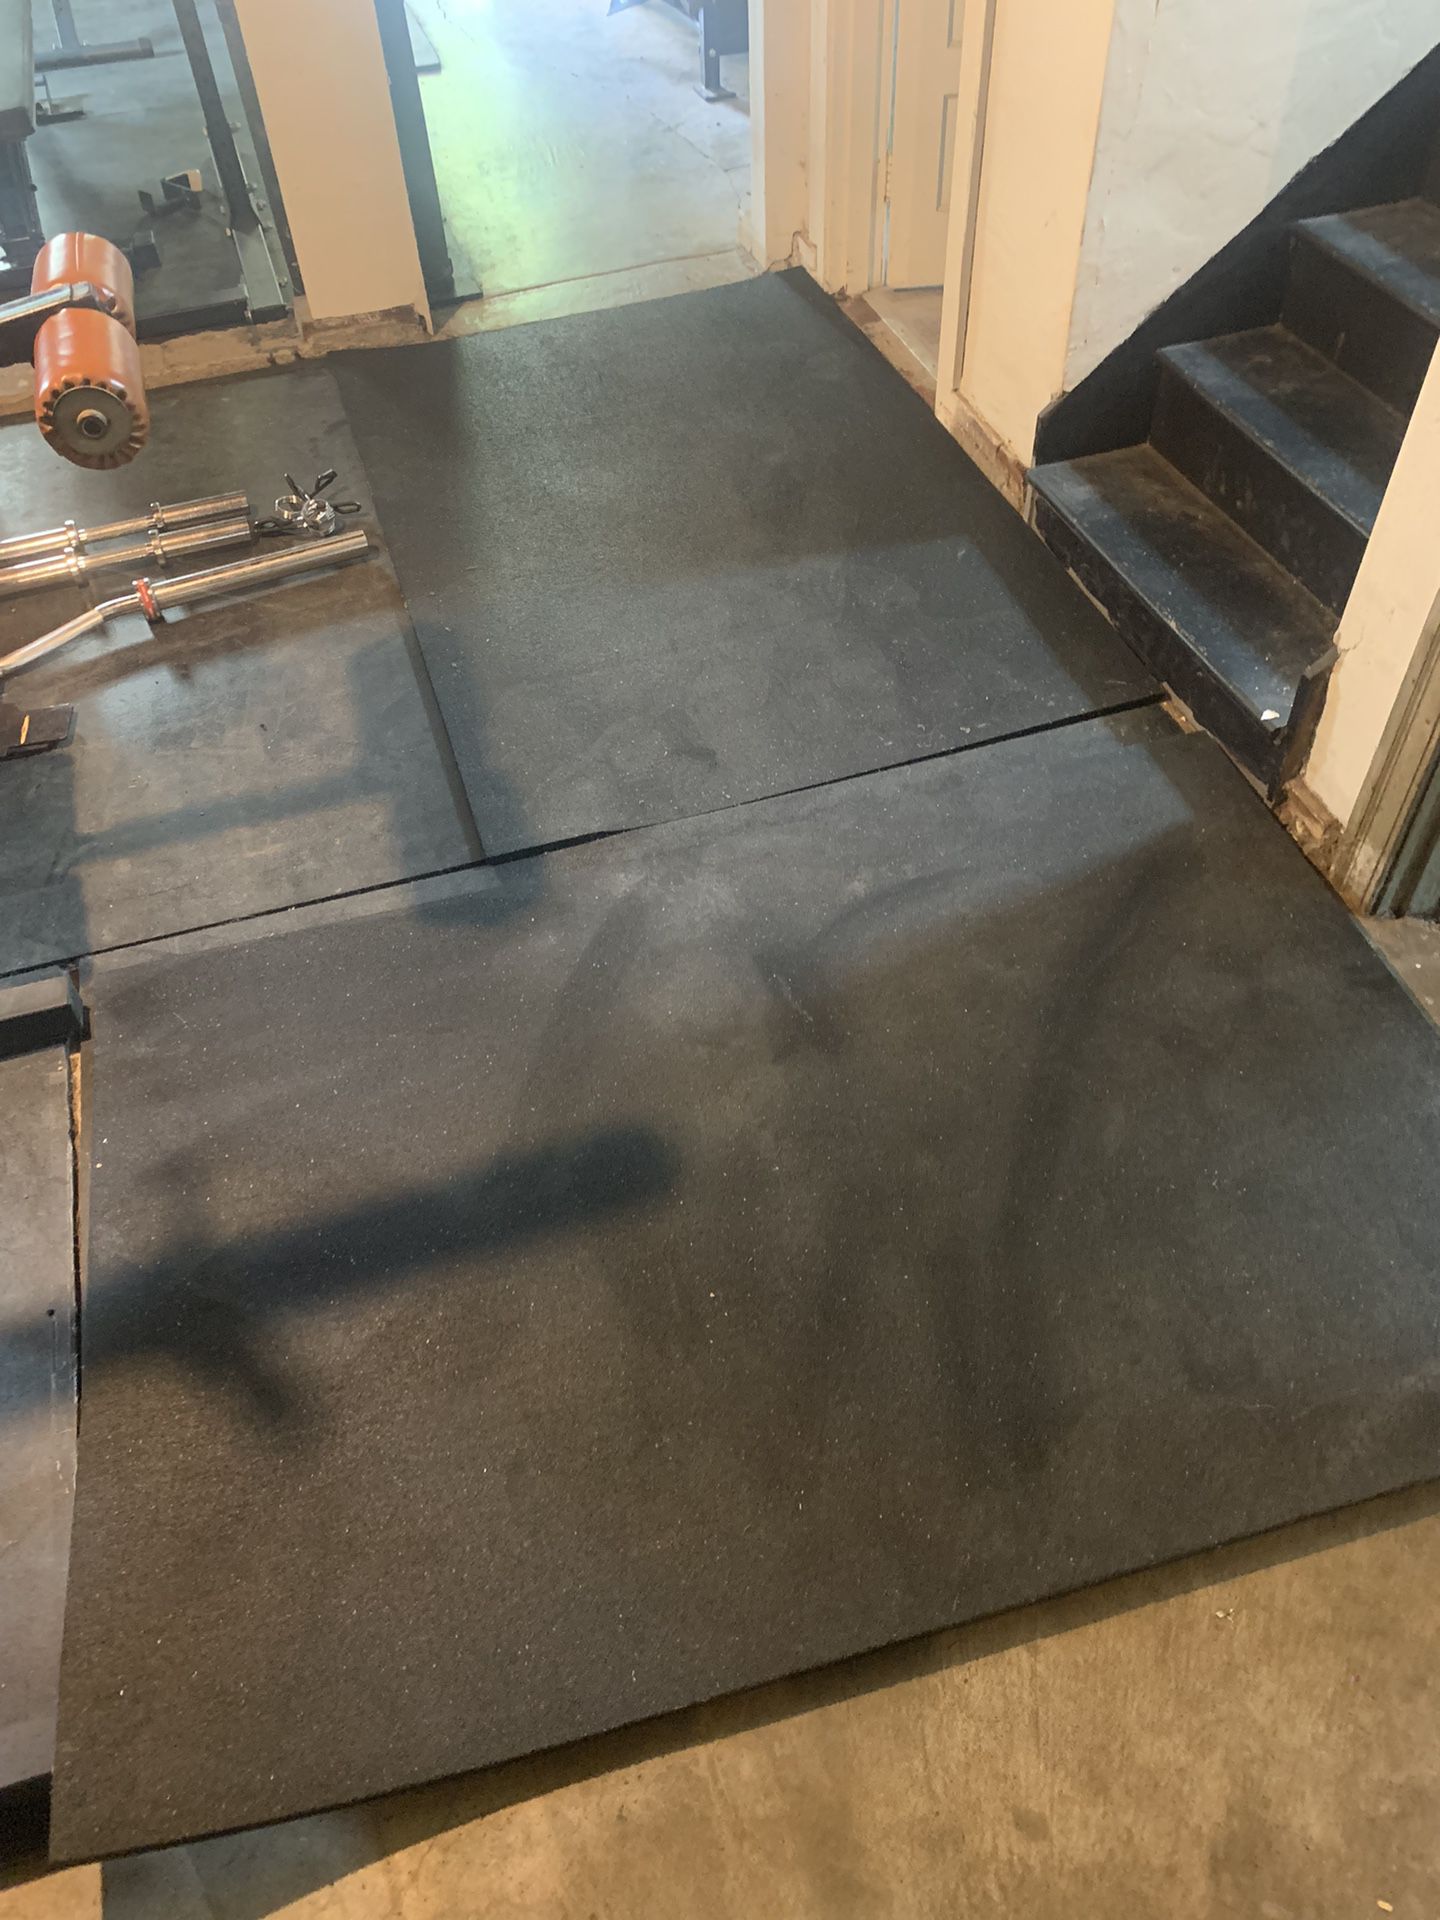 Gym flooring mats horse stall mats 6x4